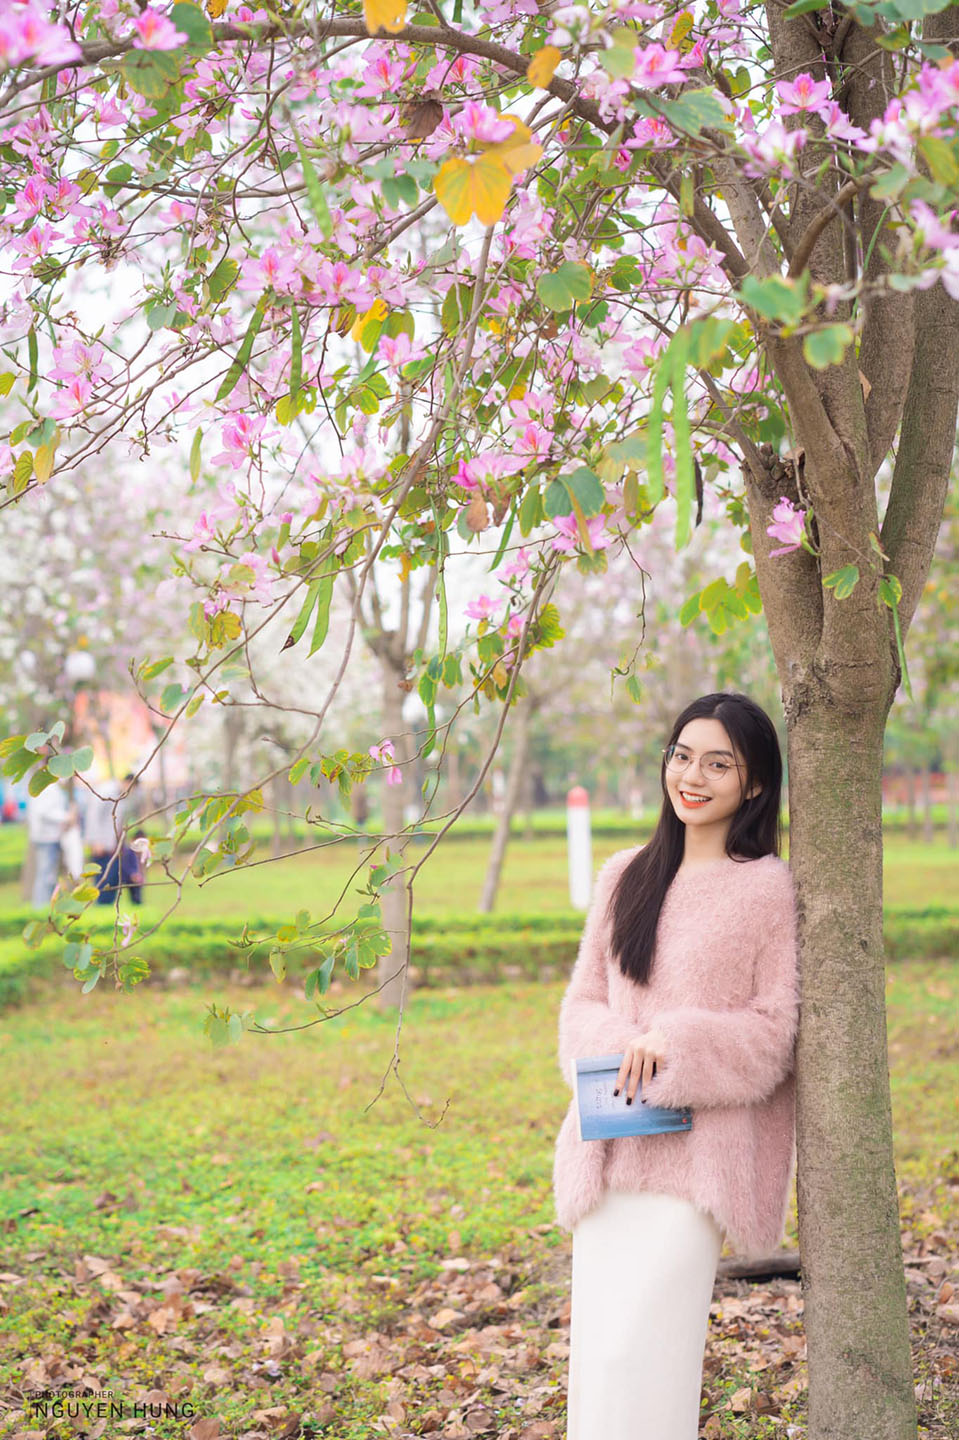 Mùa hoa ban nở - Hùng Văn Nguyễn